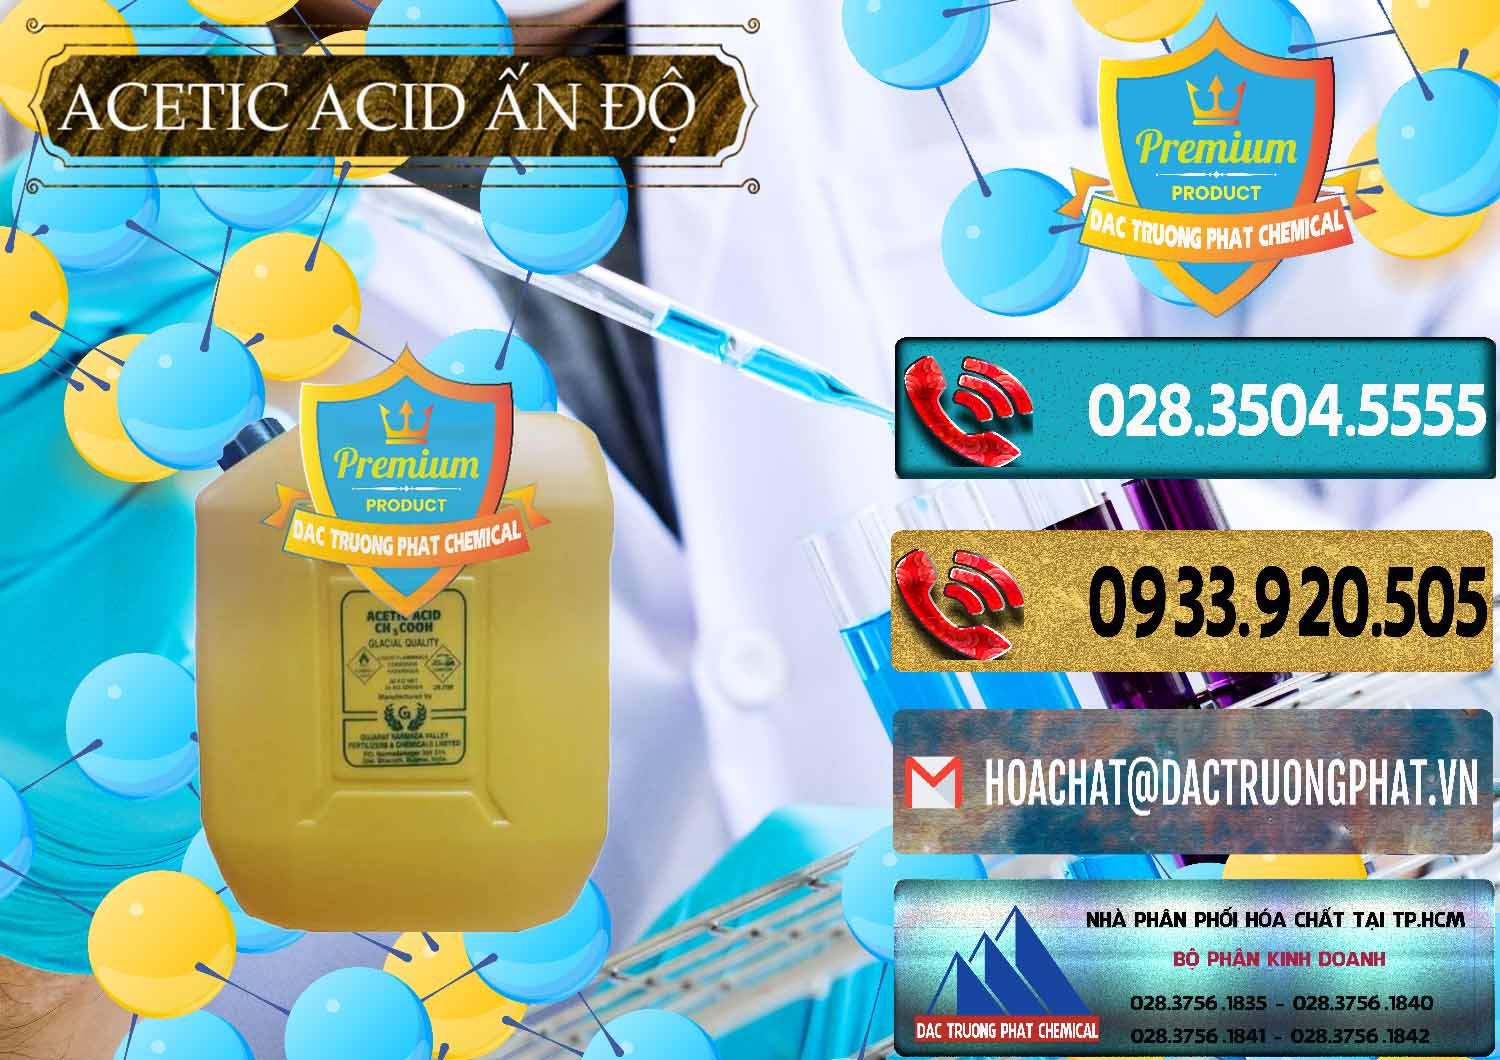 Cty chuyên bán và cung cấp Acetic Acid – Axit Acetic Ấn Độ India - 0359 - Đơn vị cung cấp & kinh doanh hóa chất tại TP.HCM - hoachatdetnhuom.com